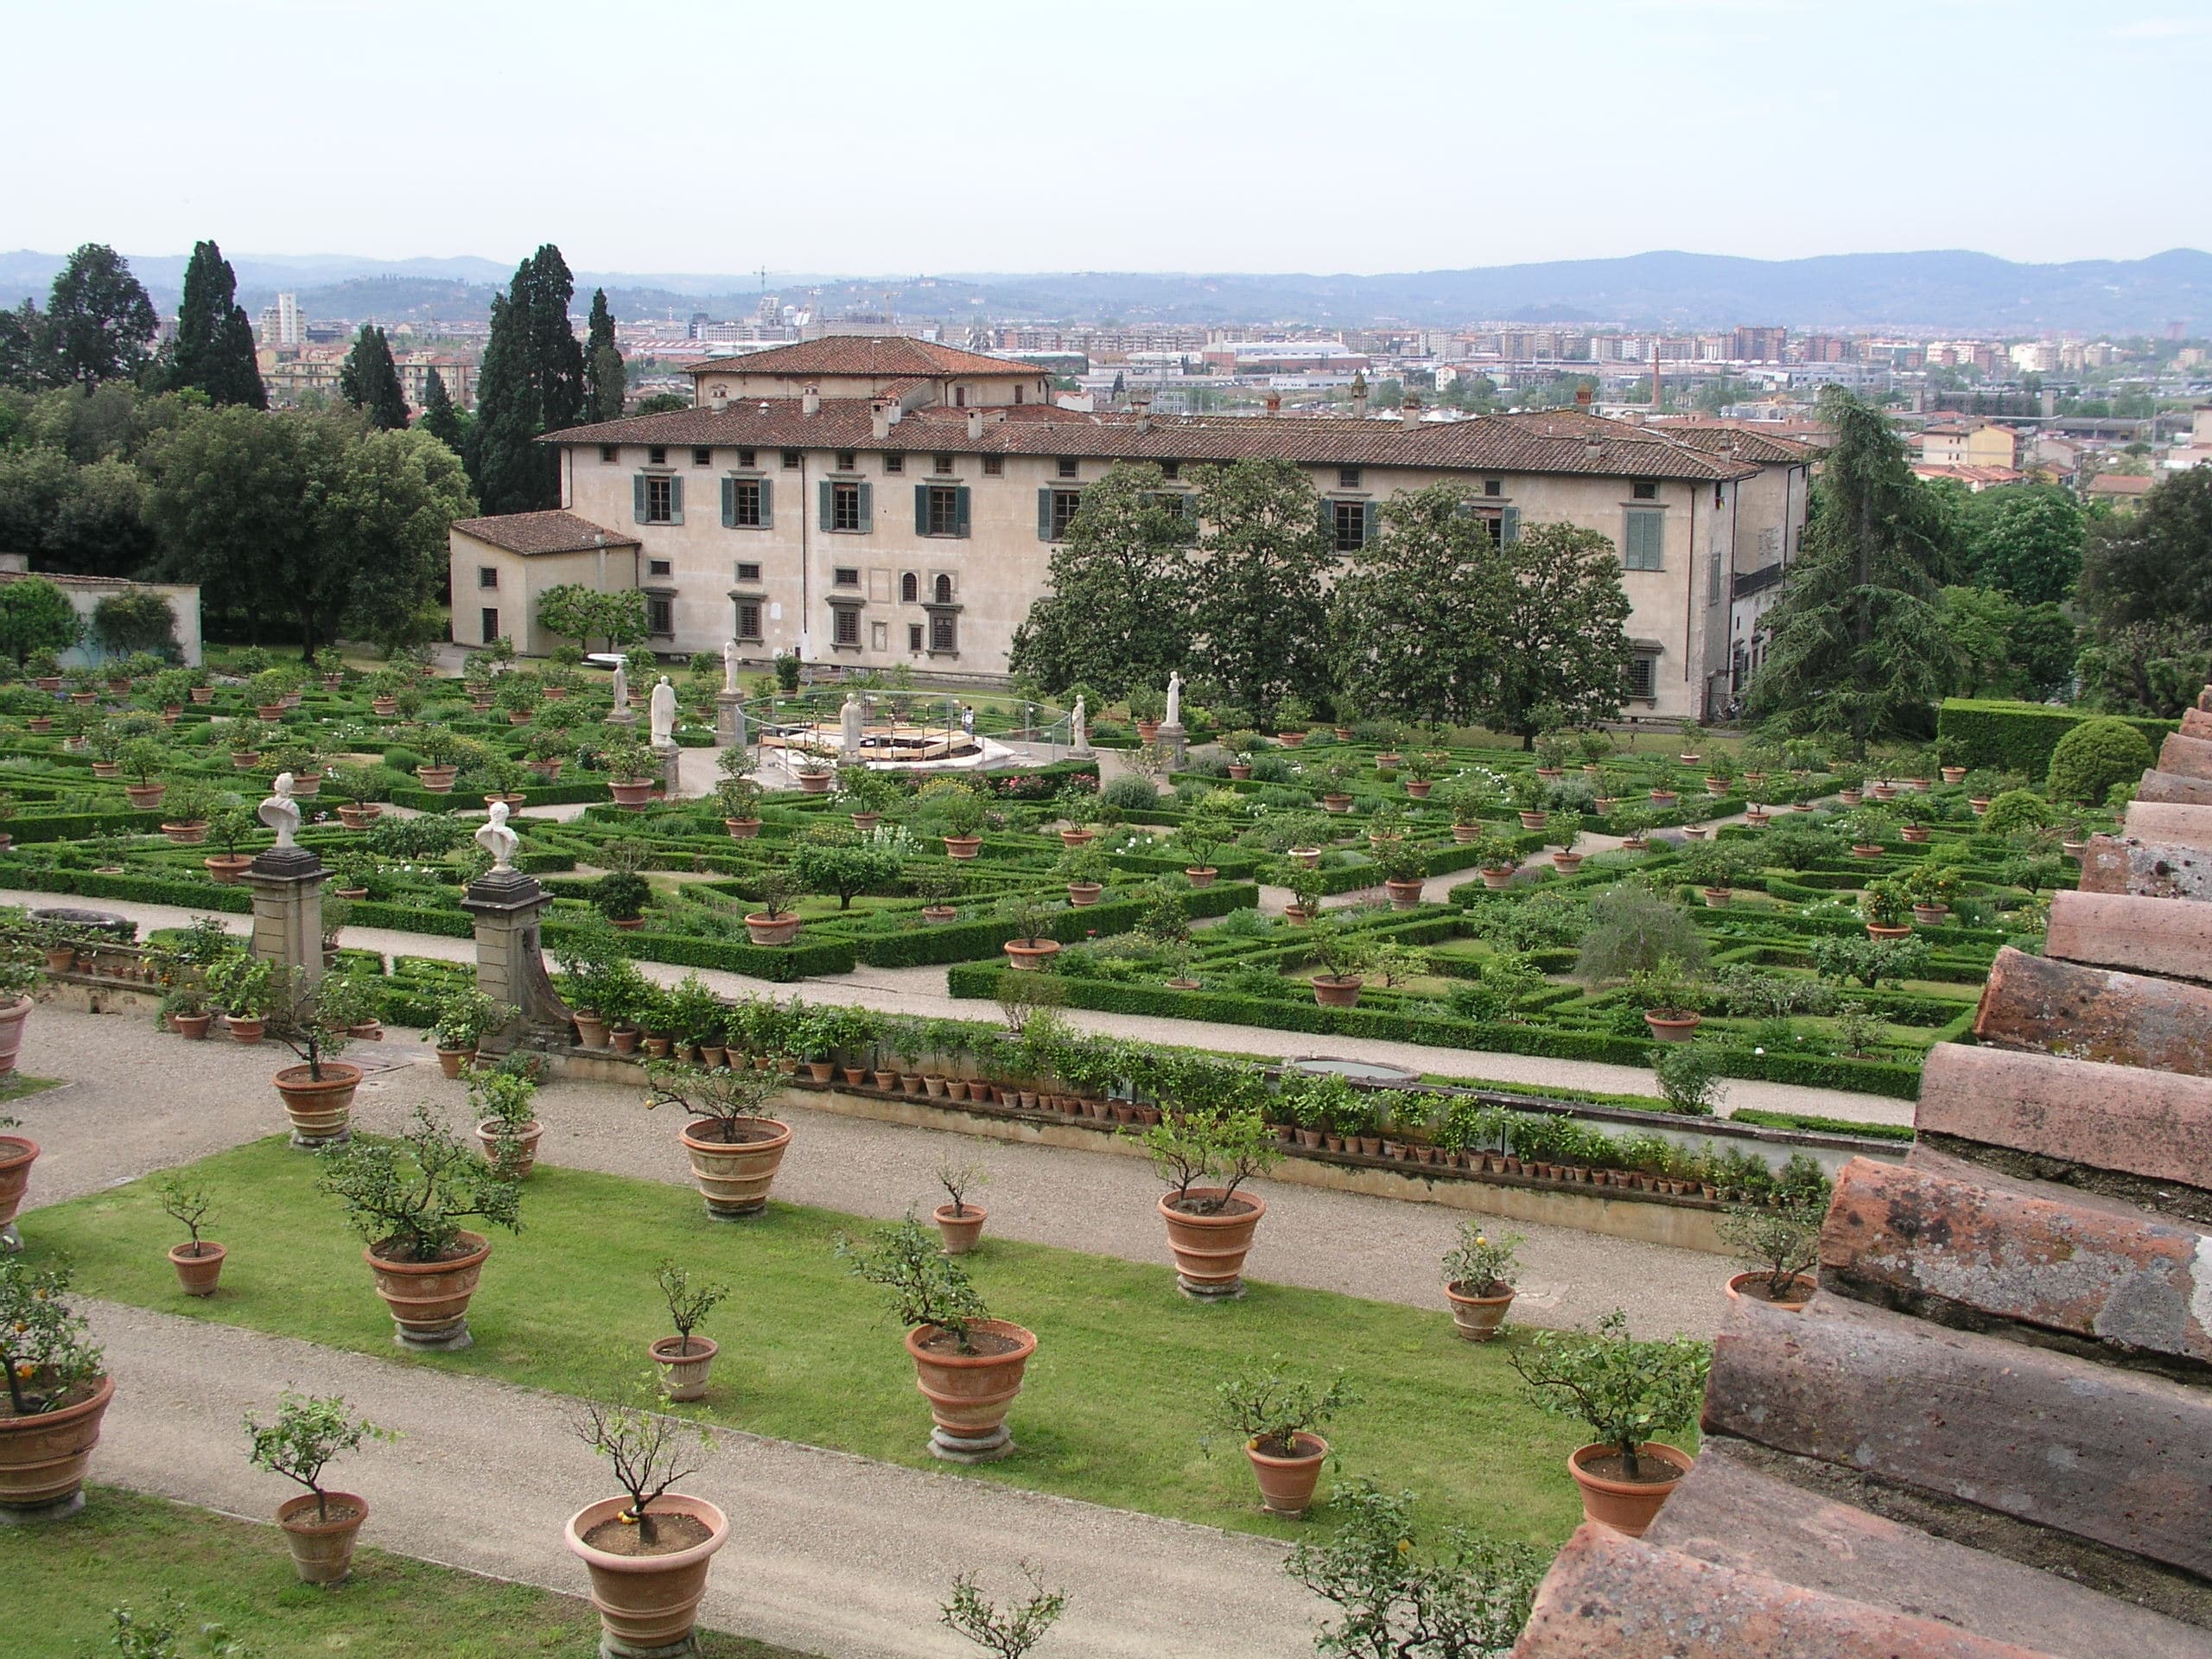  Medici villa at Castello